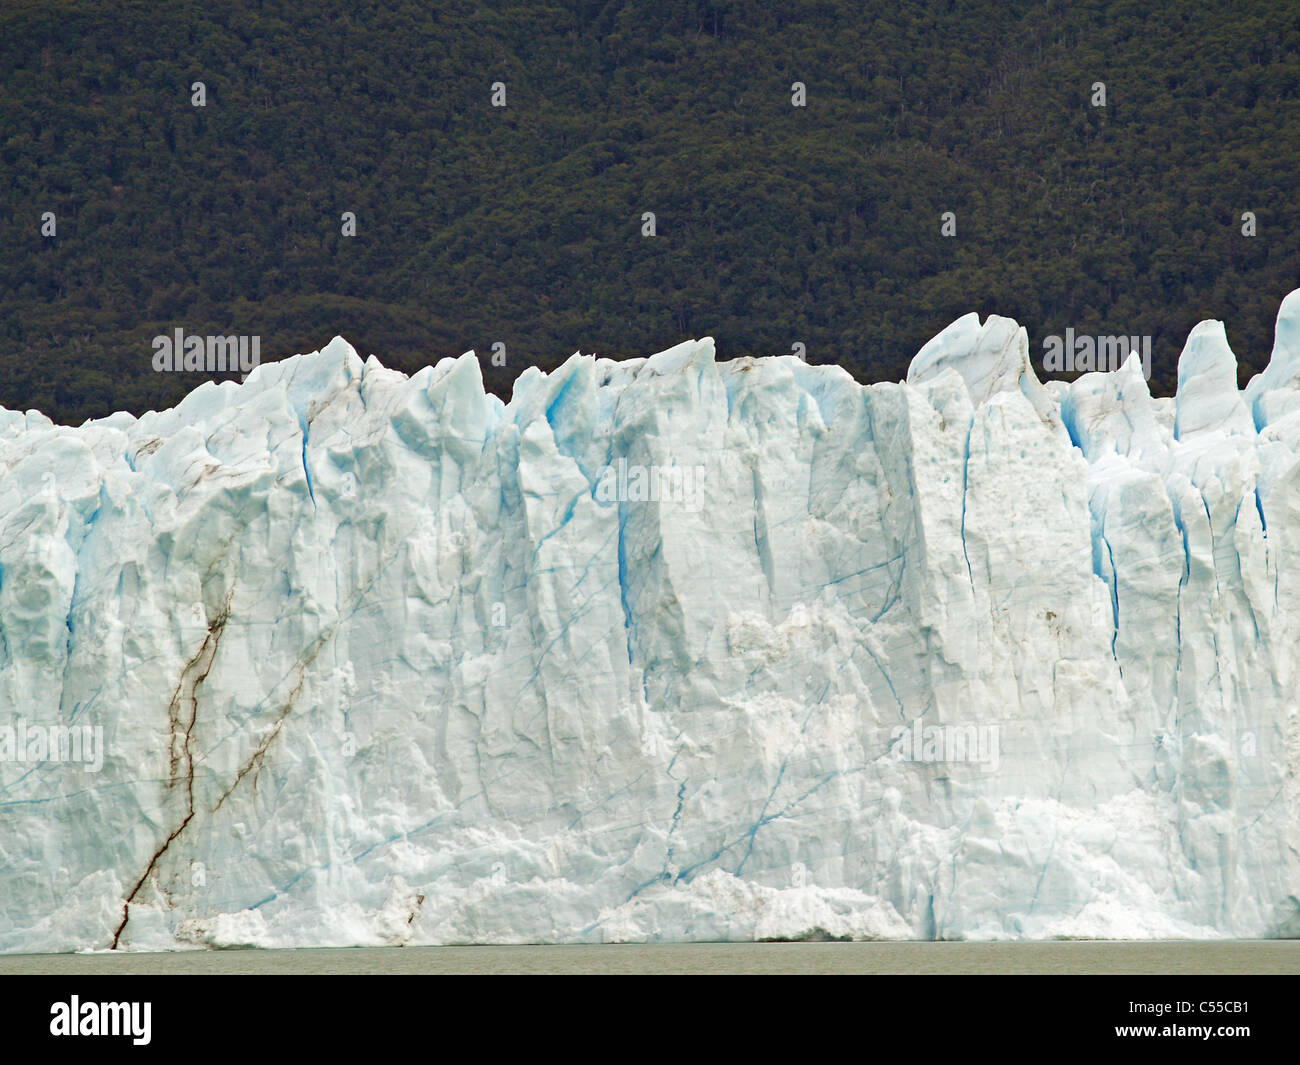 Glacial face of Perito Moreno Glacier in Argentina Stock Photo